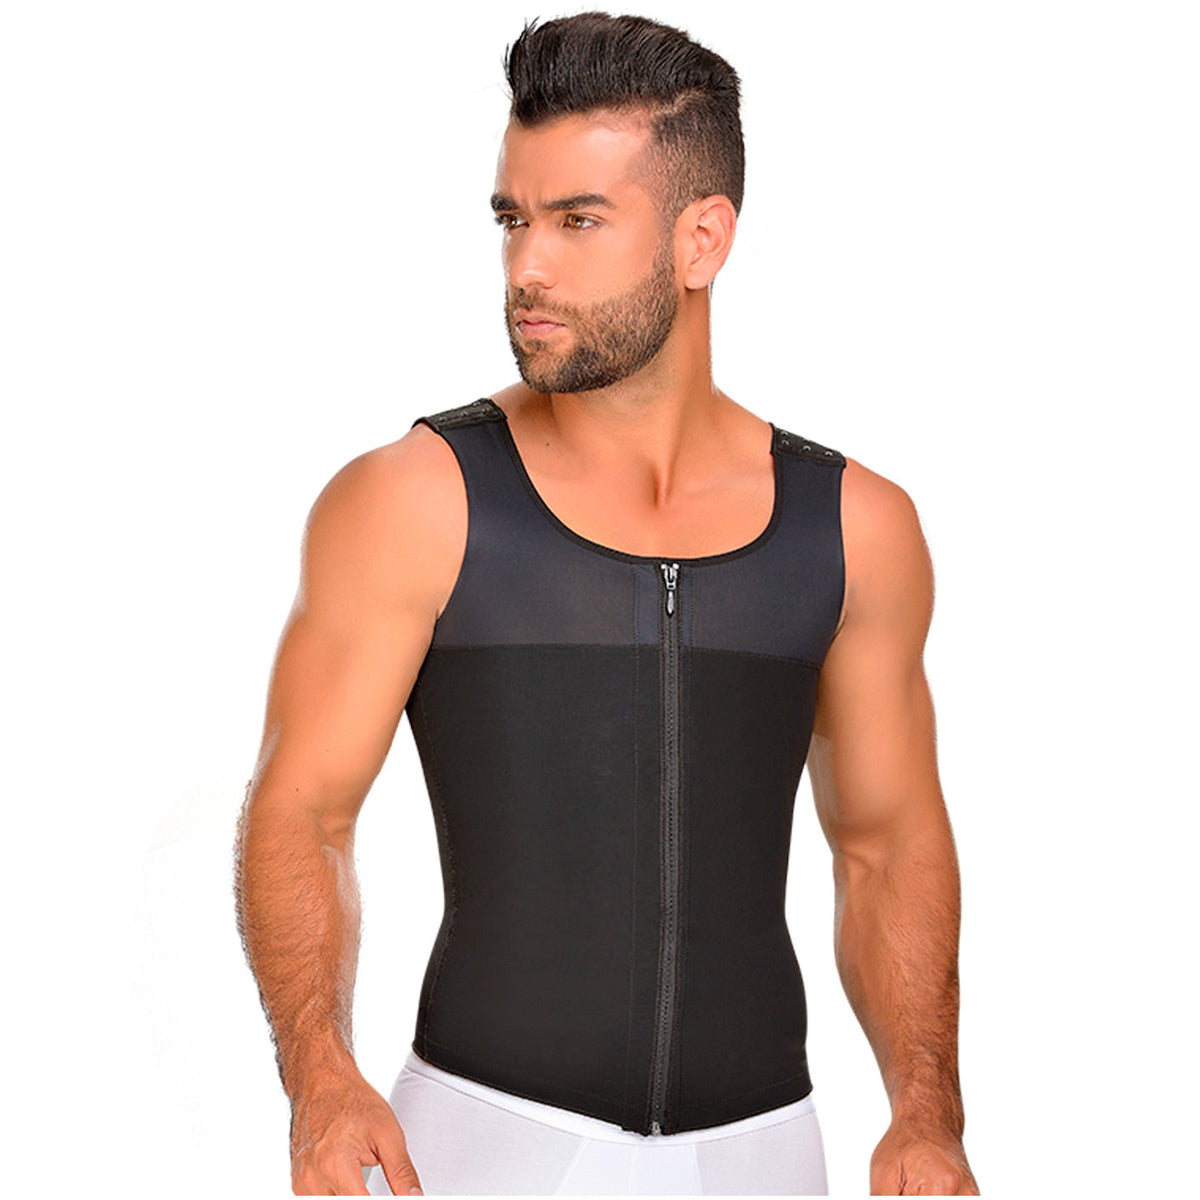 Fajas MYD 0760 | Compression Shirt | Shaper Vest for Men